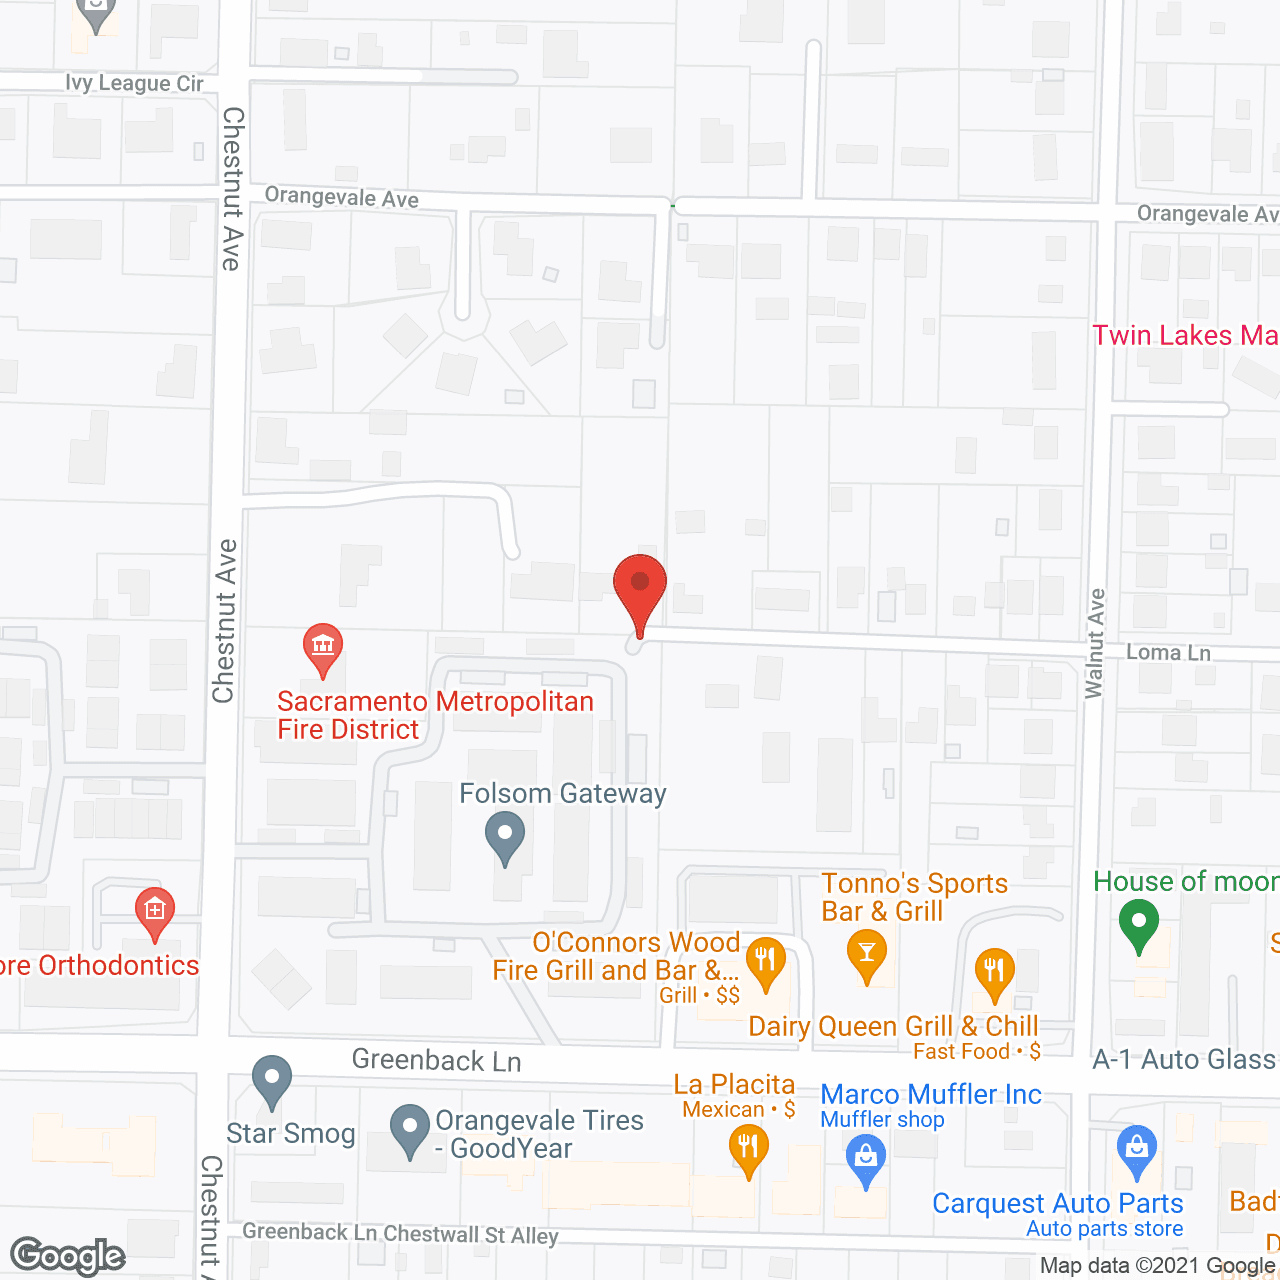 Grace Home II in google map